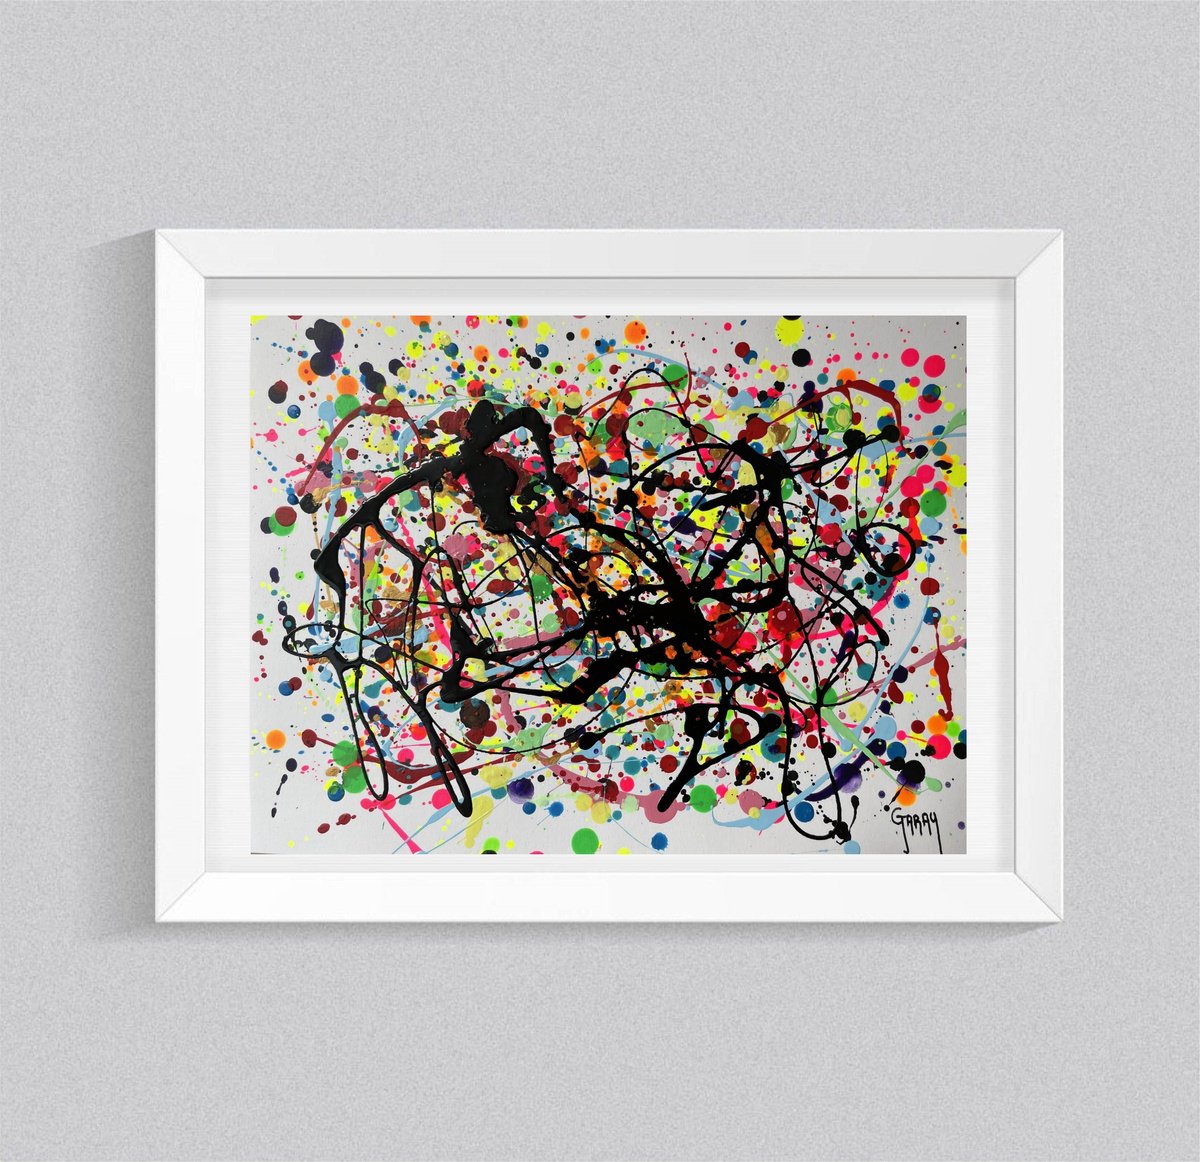 Abstract Pollock 11 by Juan Jose Garay